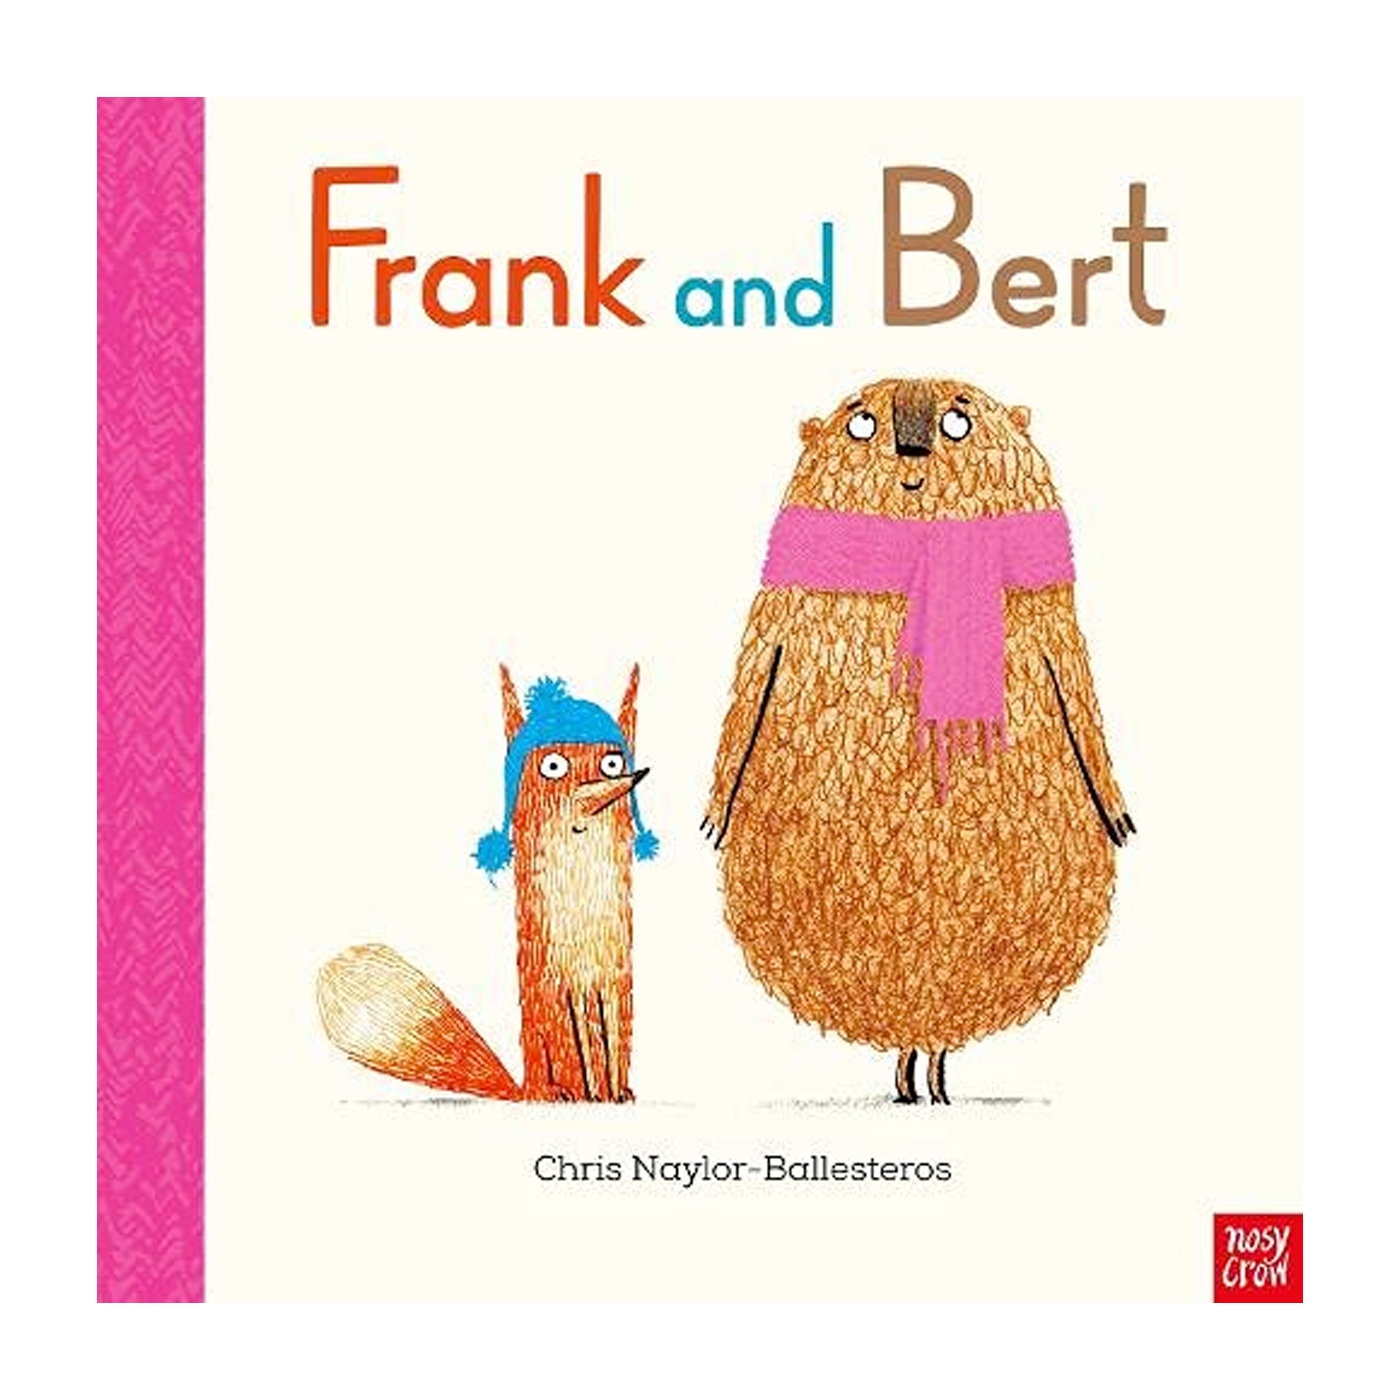  Frank and Bert